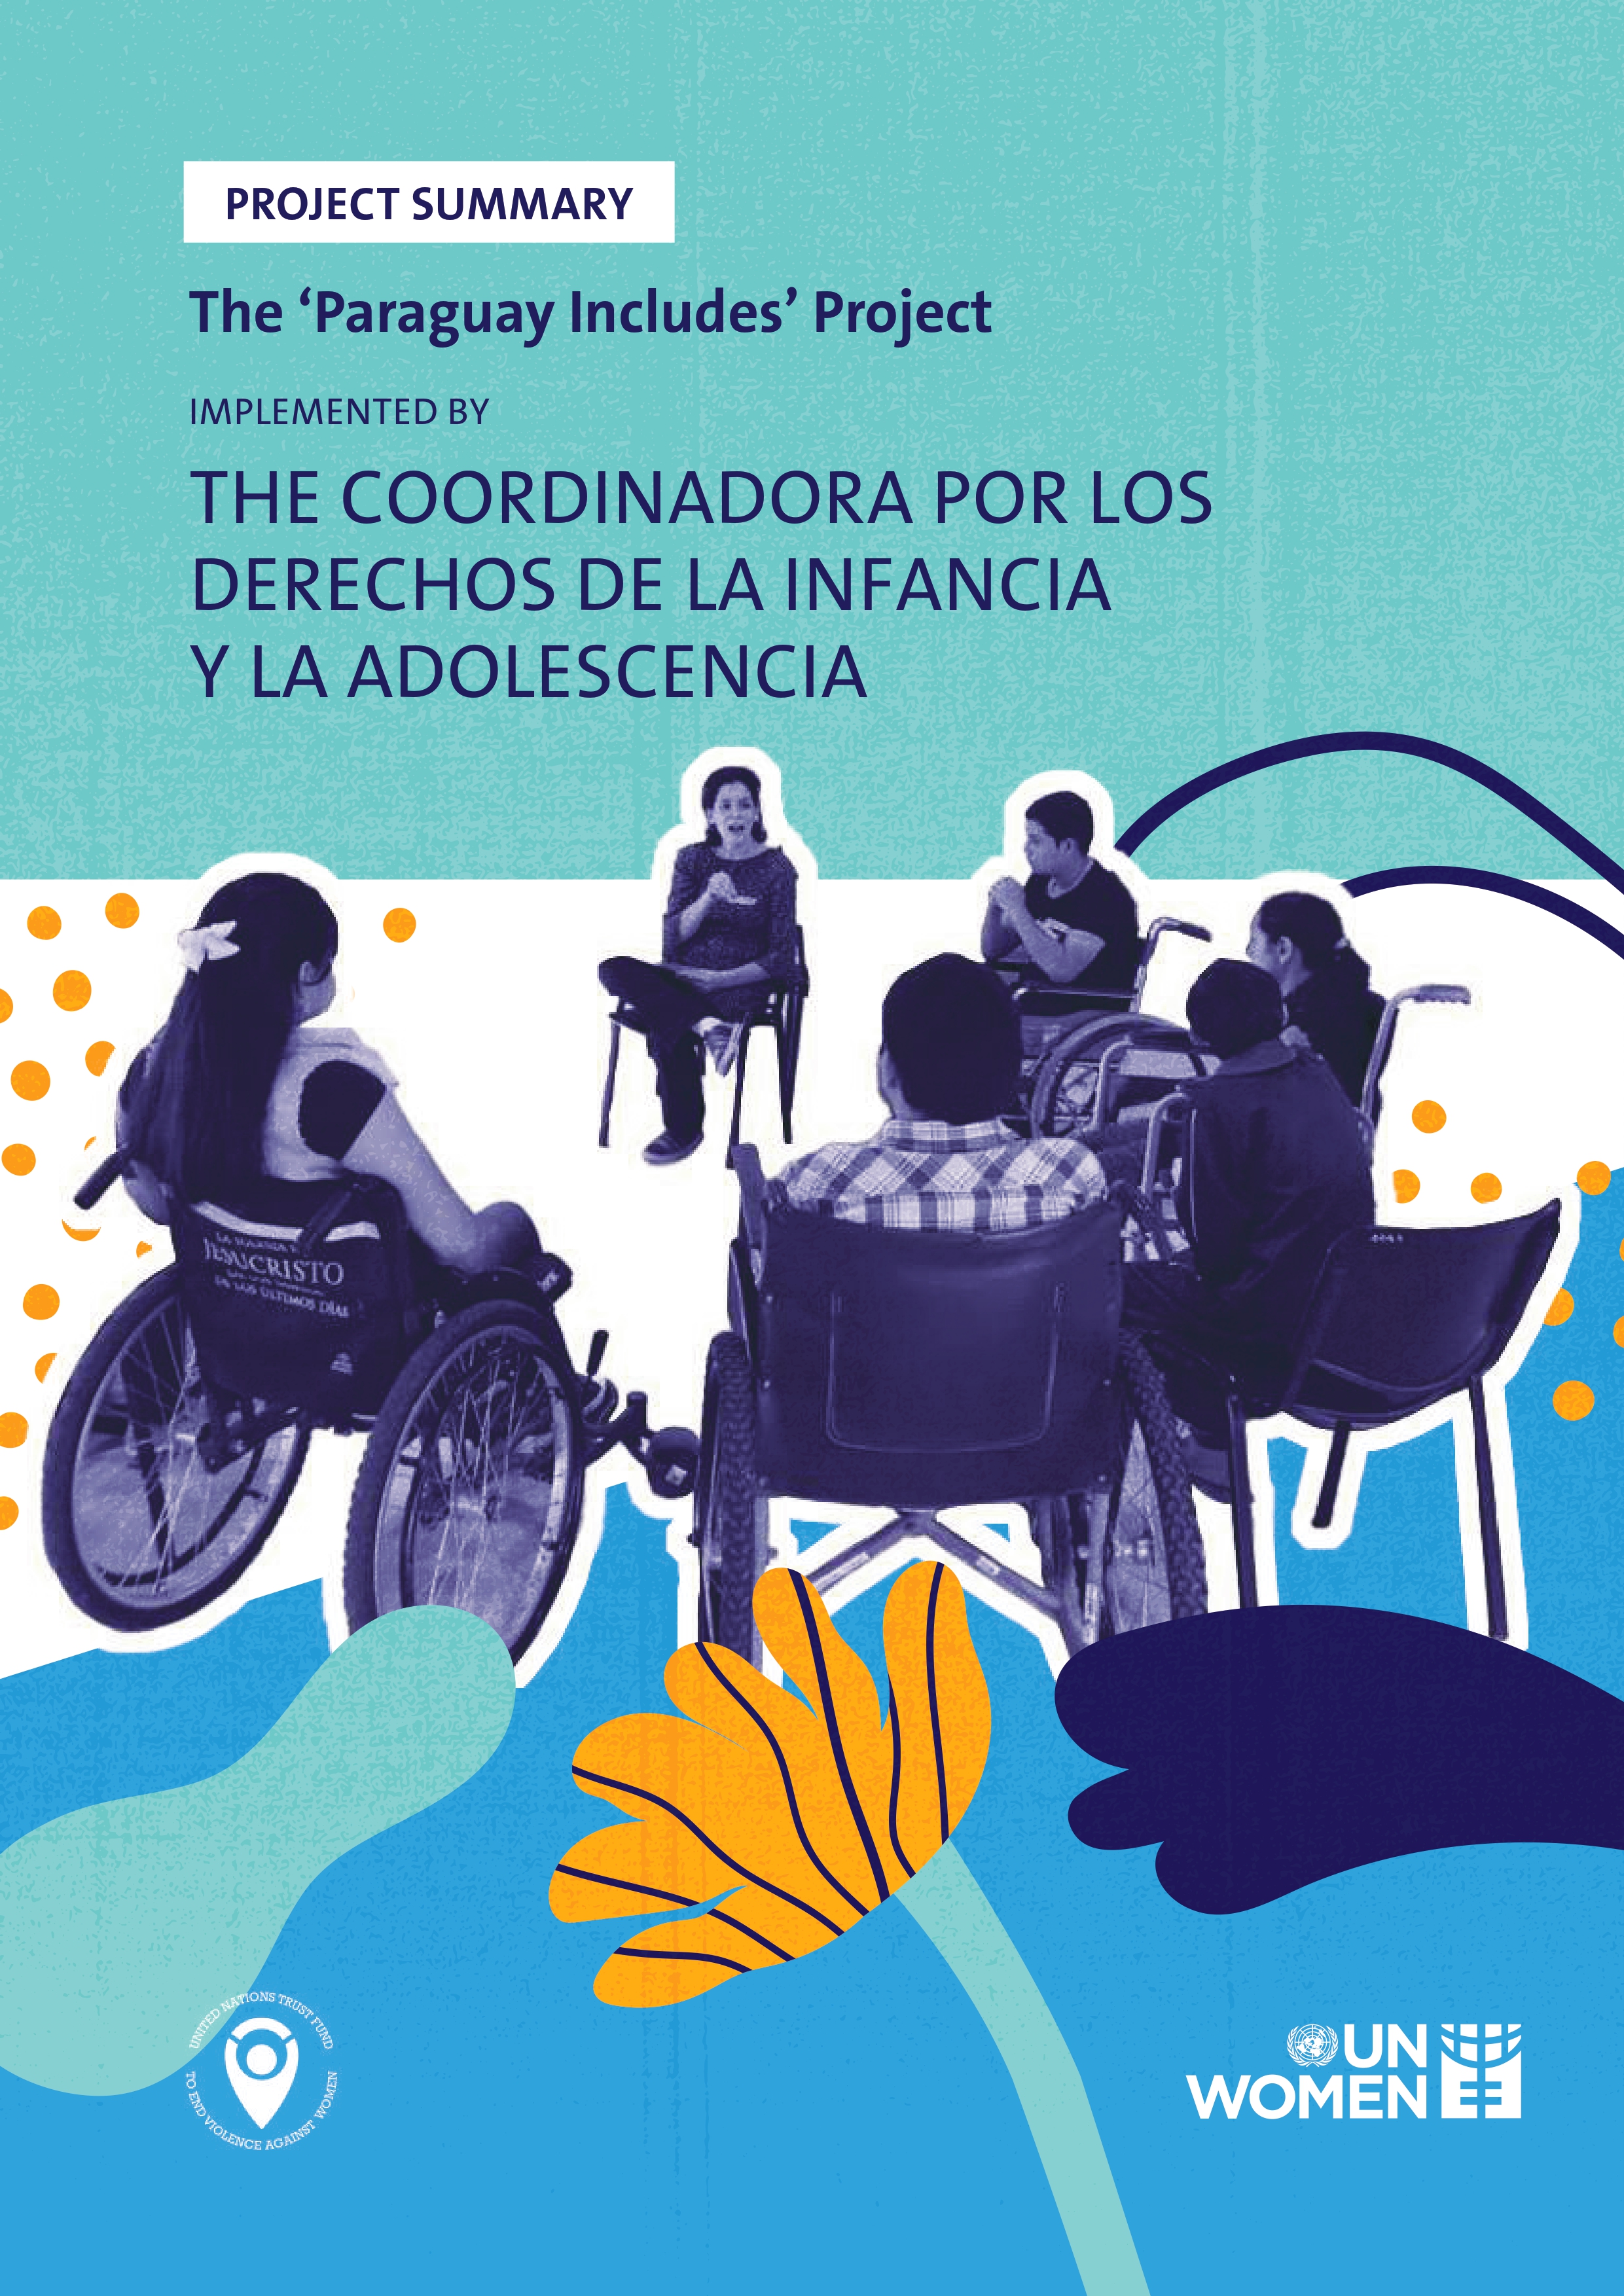 Project Summary of “Paraguay Includes” by Coordinadora por los Derechos de la Infancia y la Adolescencia 